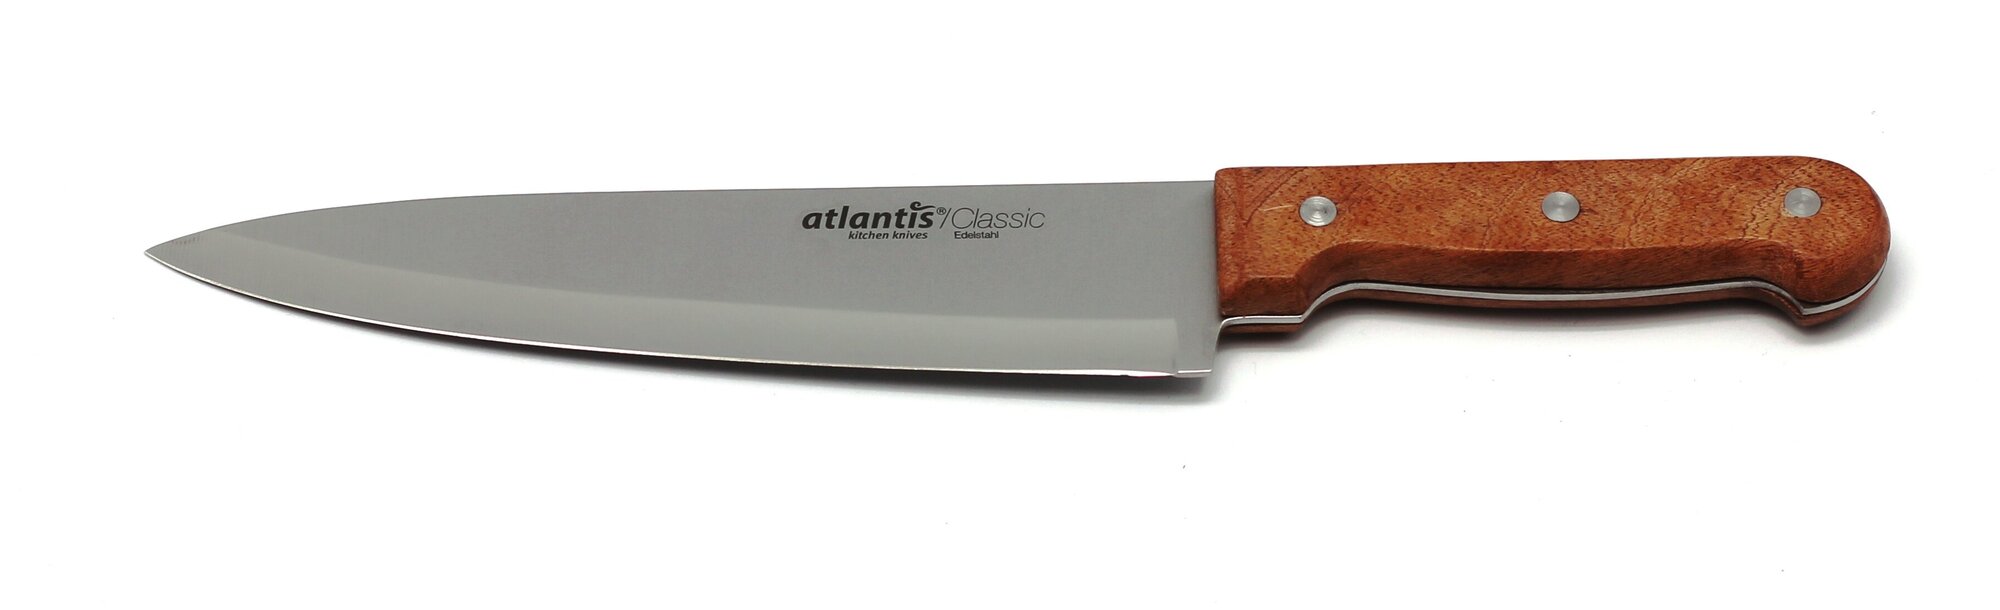 Нож Atlantis 24701-SK 20см поварской